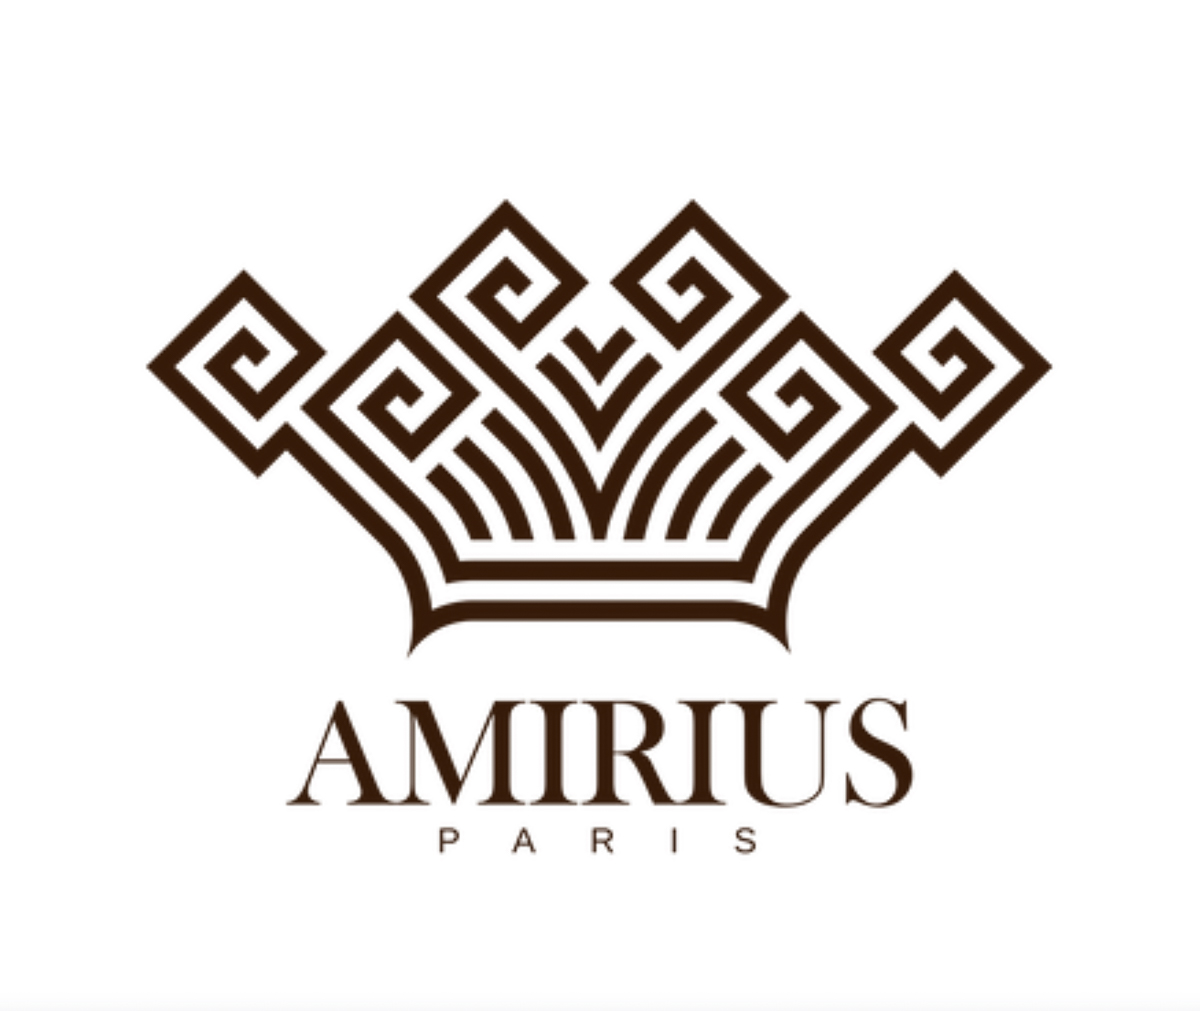 Amirius perfumes and colognes